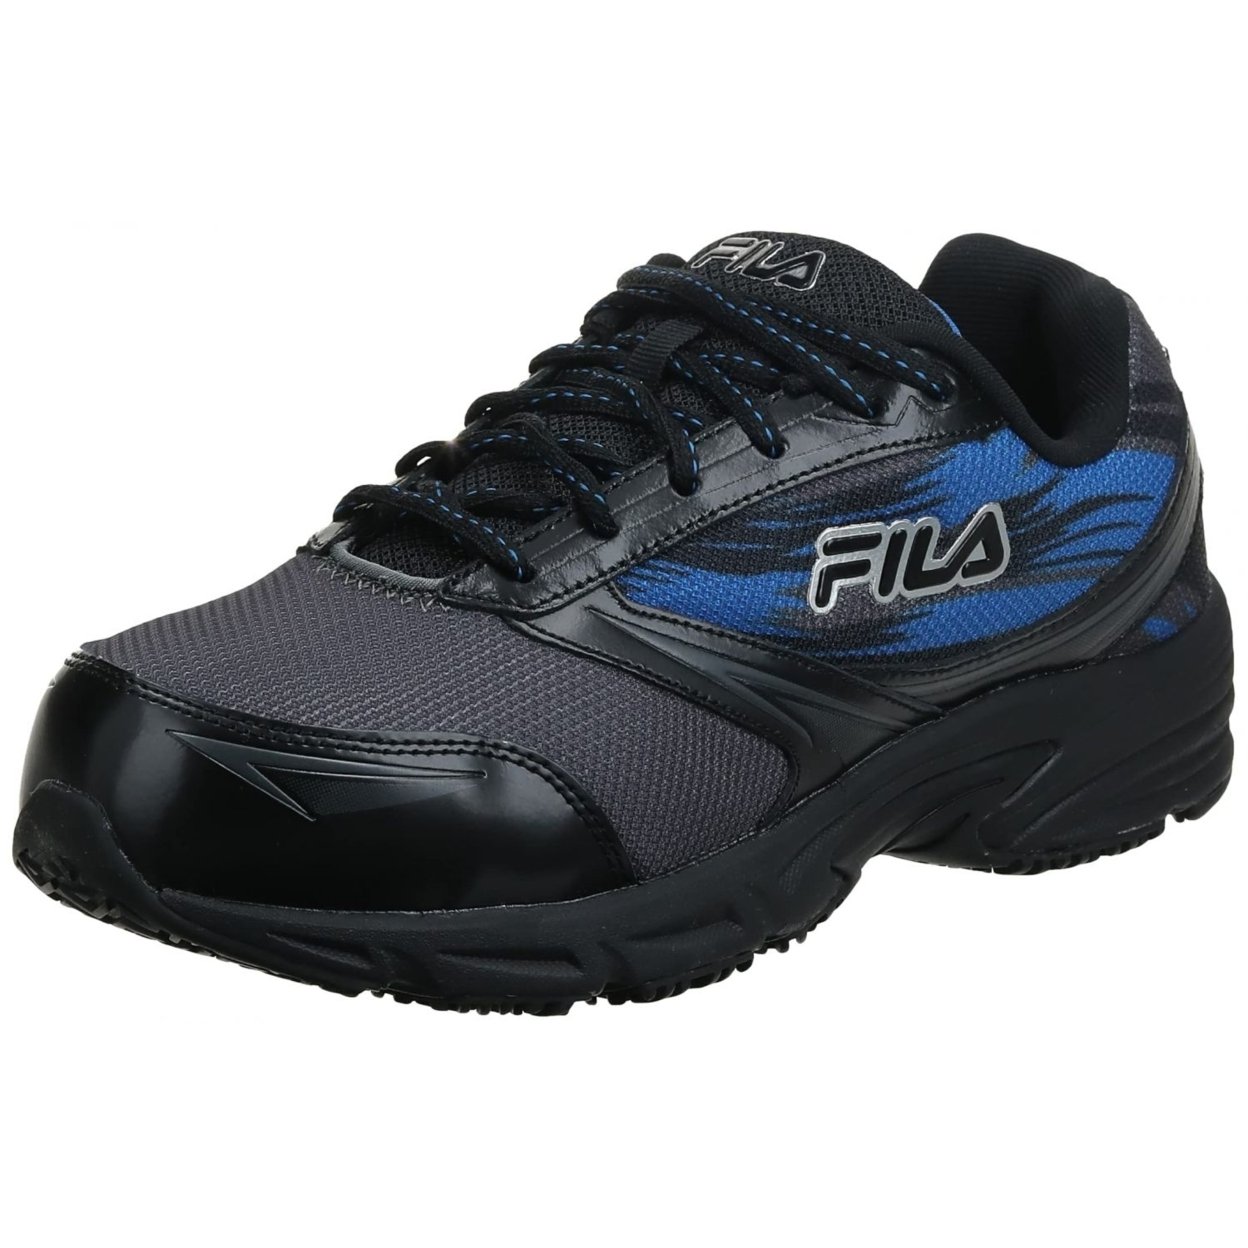 Fila Menâs Memory Meiera 2 Slip Resistant And Composite Toe Work Shoe CSRK/BLK/PRBL - Castlerock/Black/Prince Blue, 10